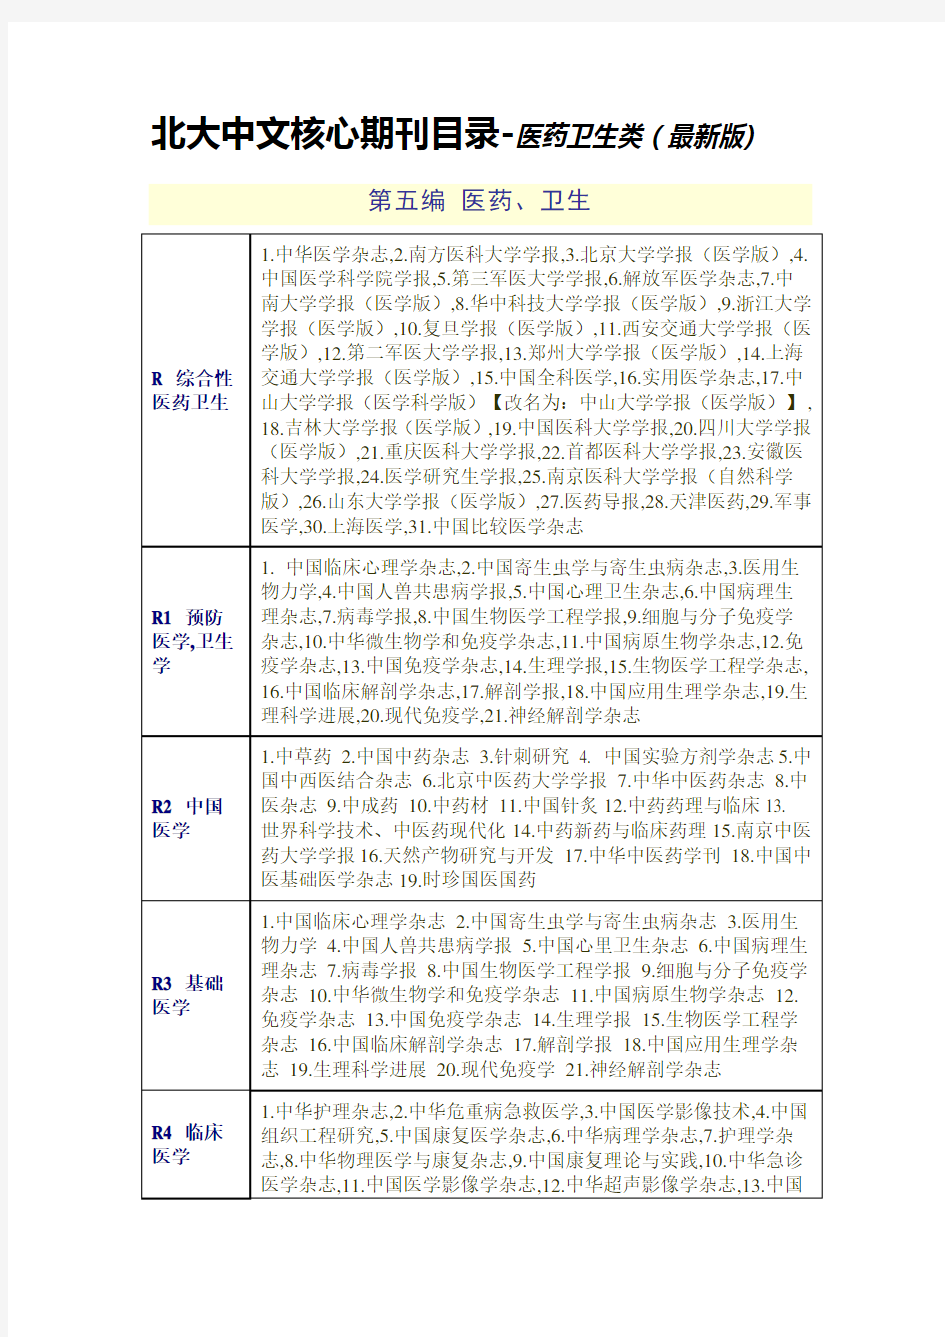 2019年版北大中文核心期刊目录(第八版)全